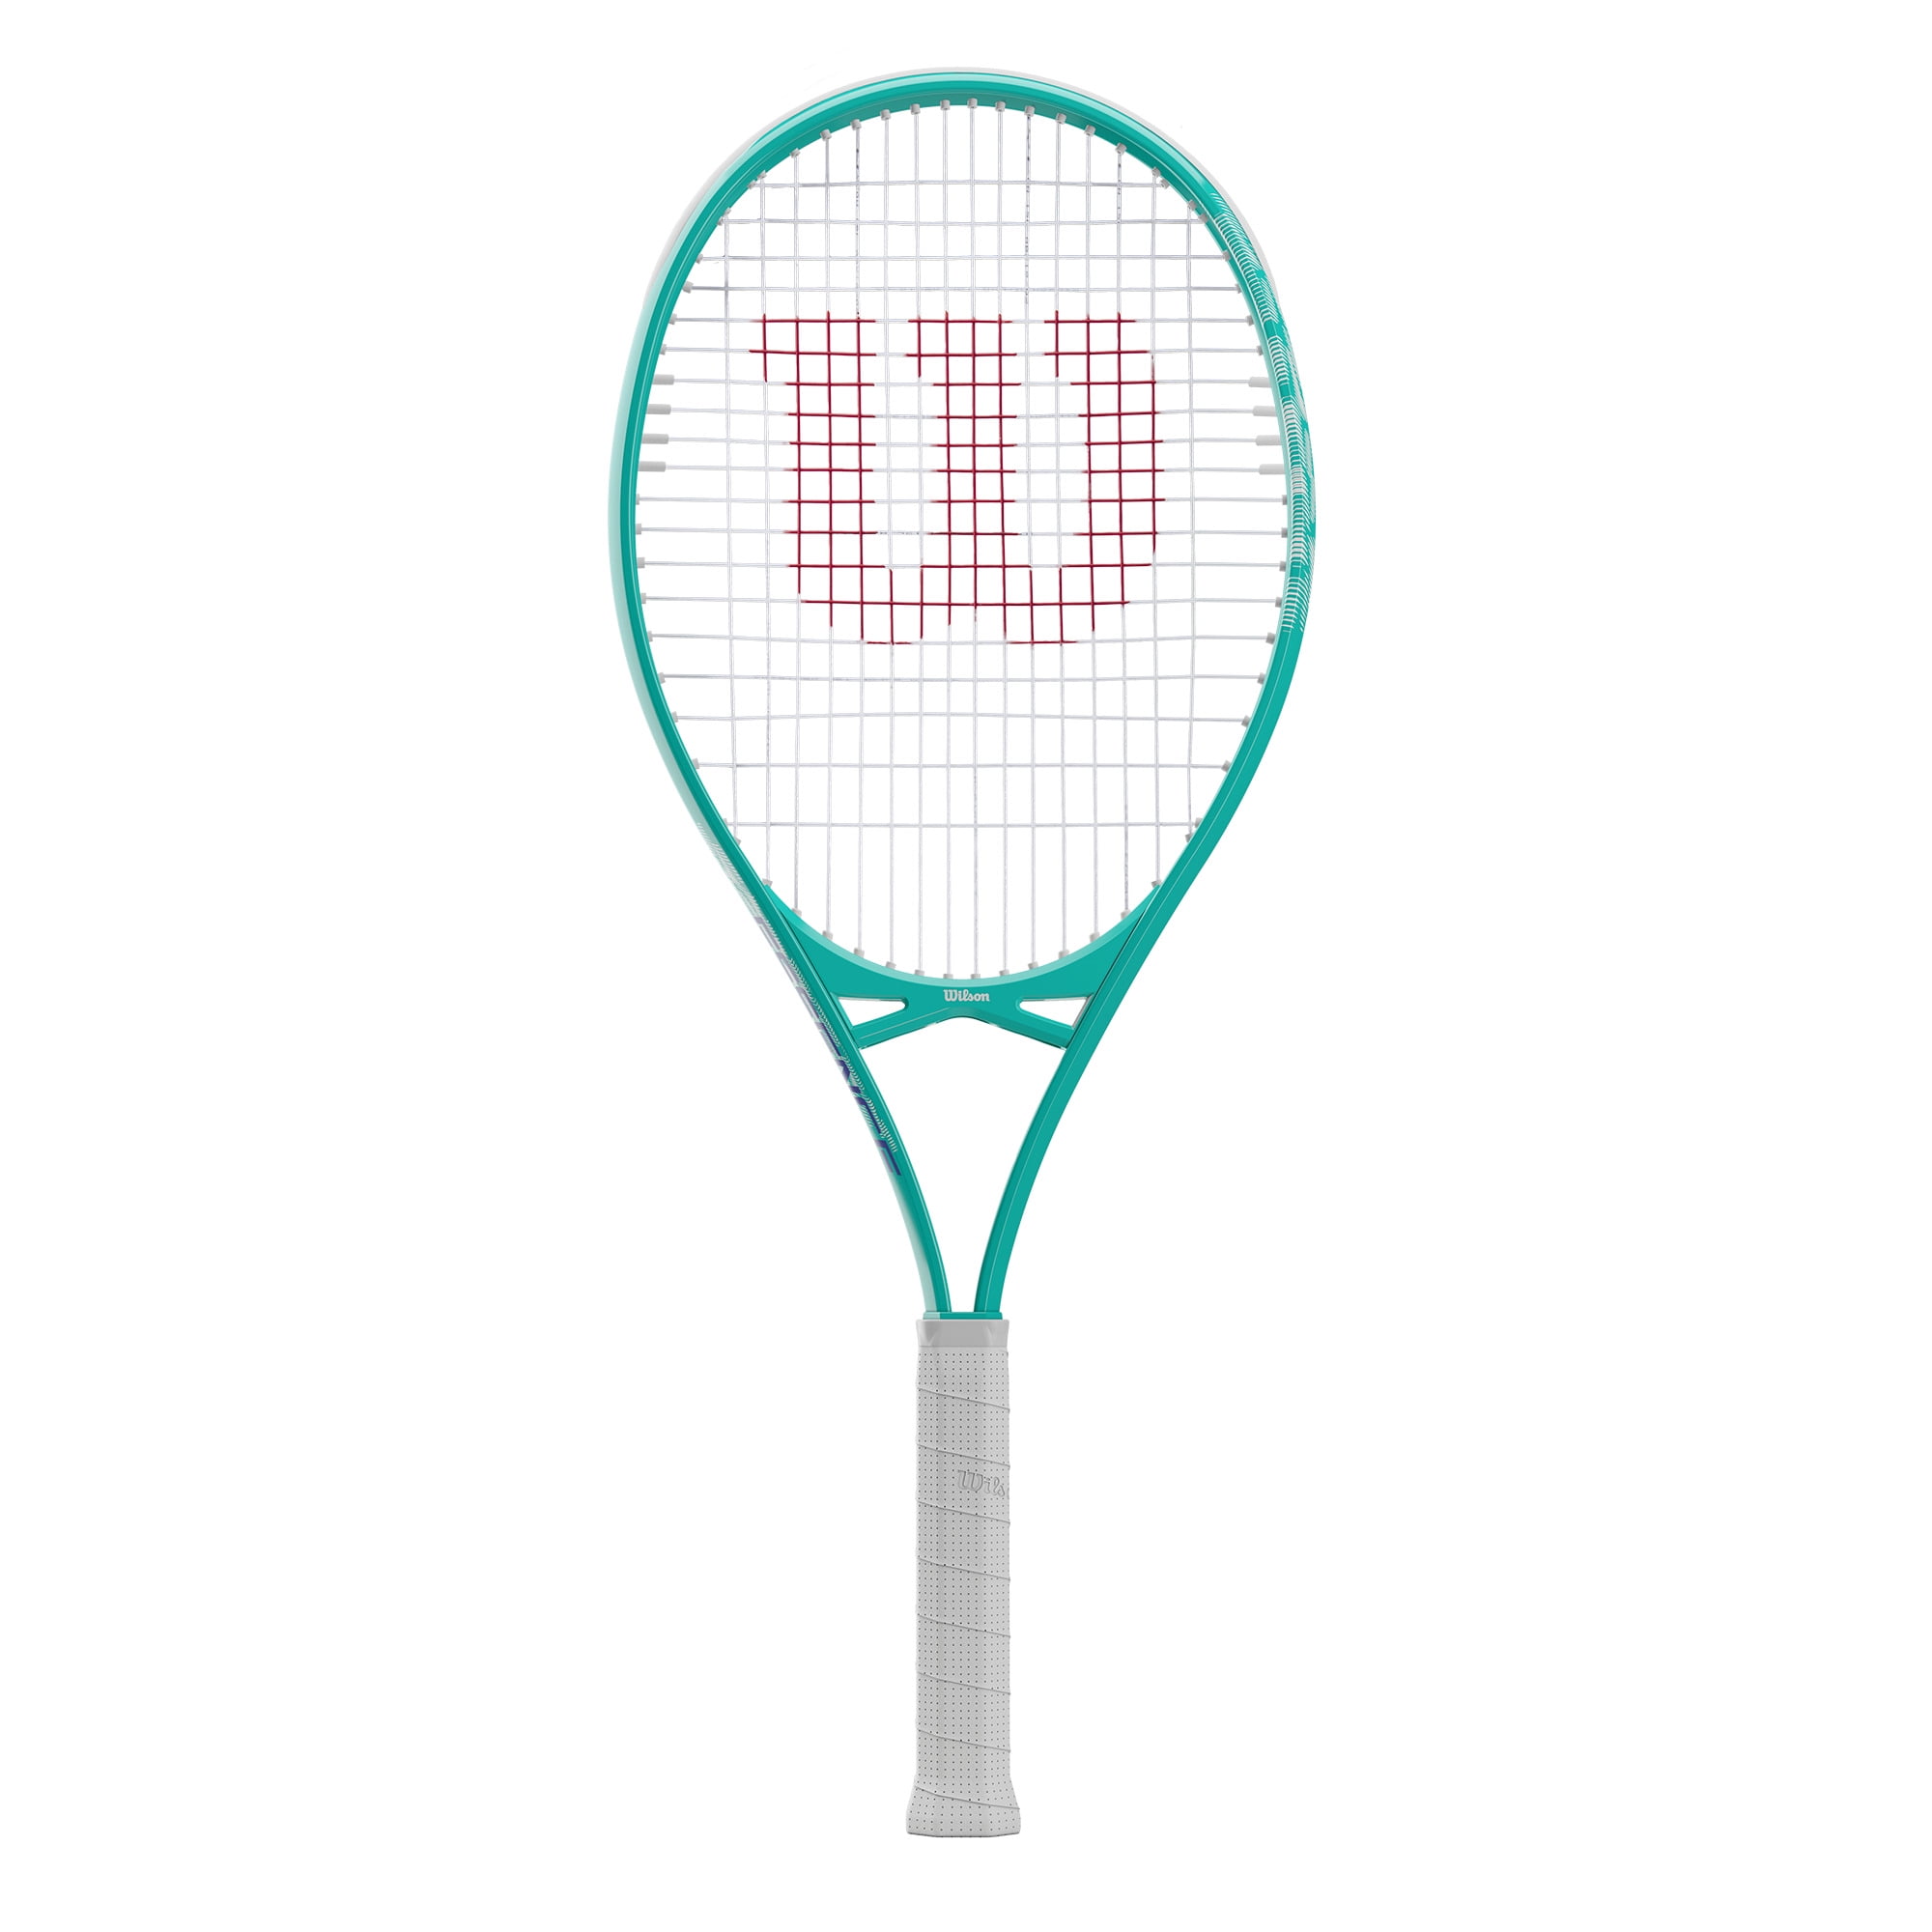 Wilson Ultra Power XL 112 Tennis Racket Sport Equipment Outdoor Play Adult Teens 